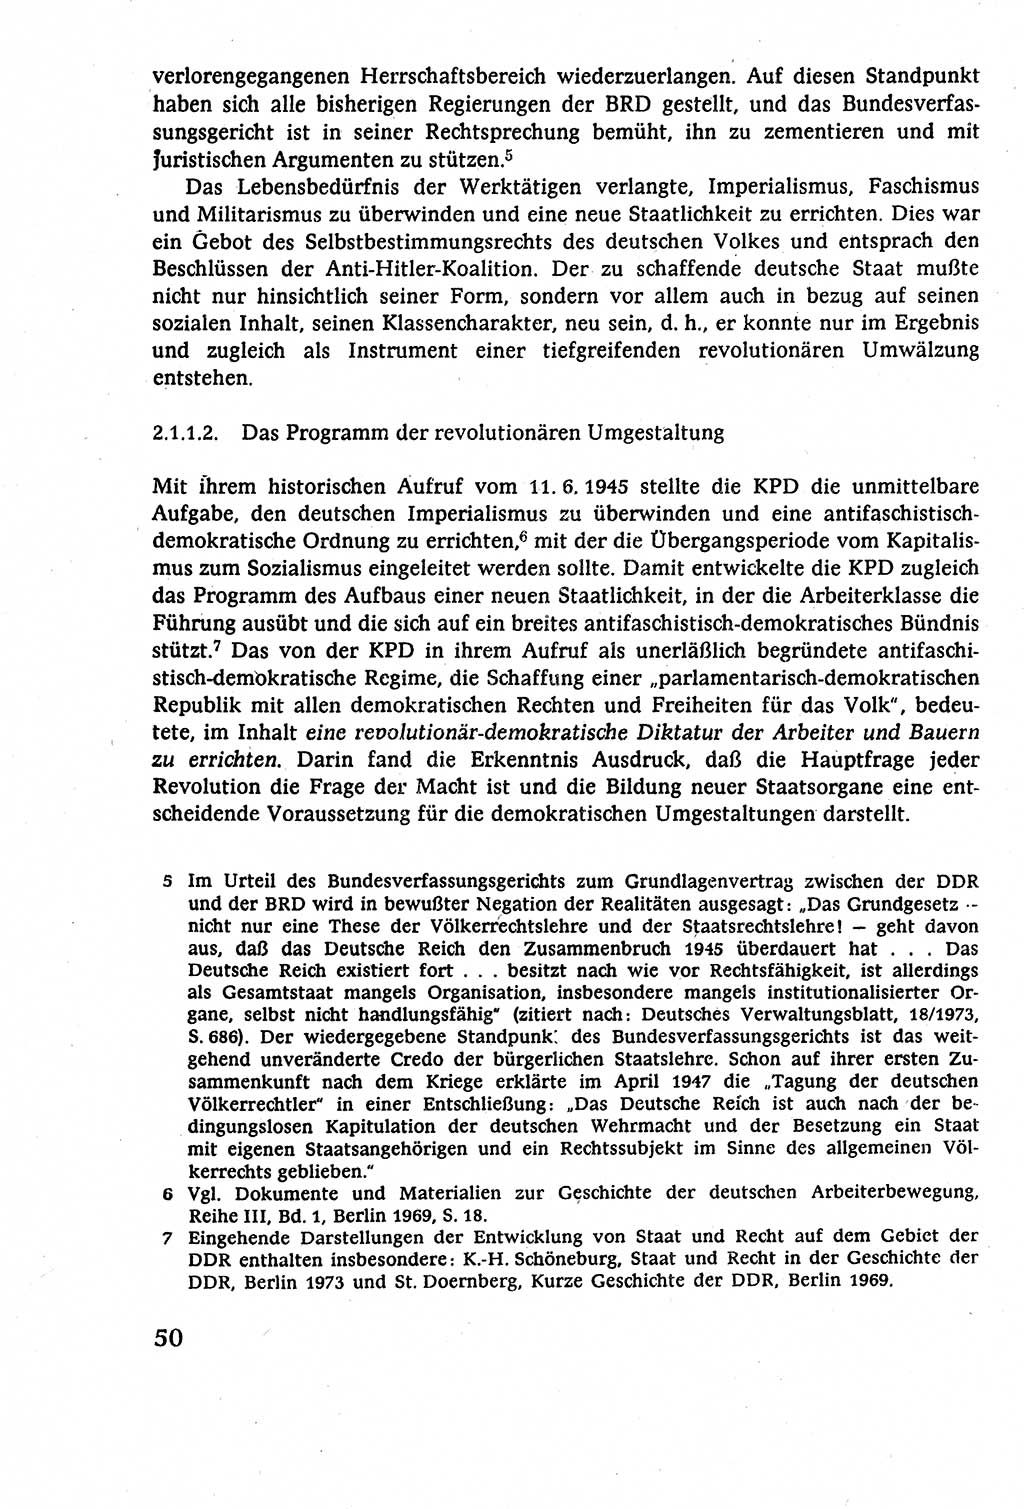 Staatsrecht der DDR (Deutsche Demokratische Republik), Lehrbuch 1977, Seite 50 (St.-R. DDR Lb. 1977, S. 50)